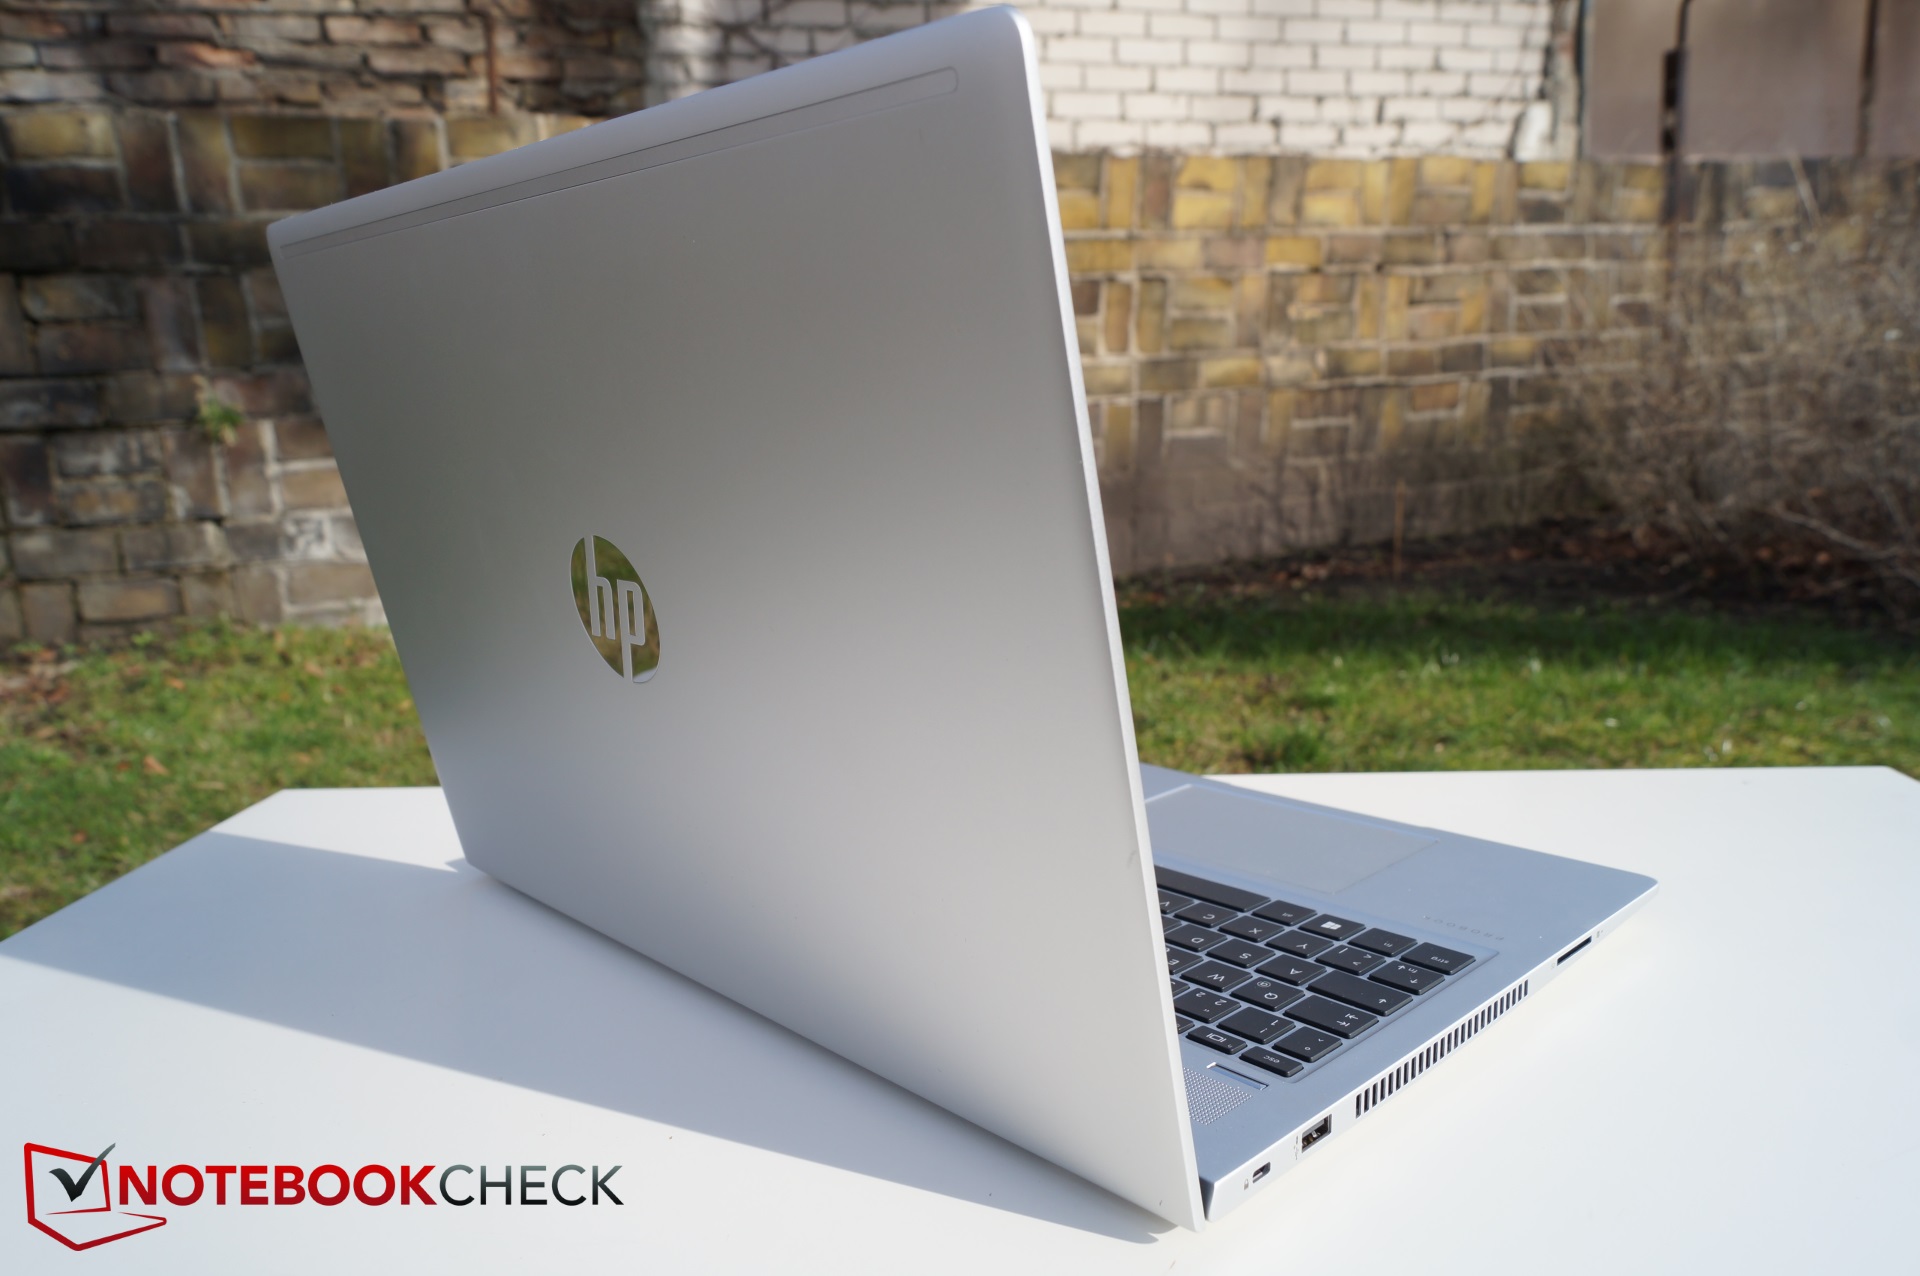 Ноутбук Hp Probook 450 G6 Купить